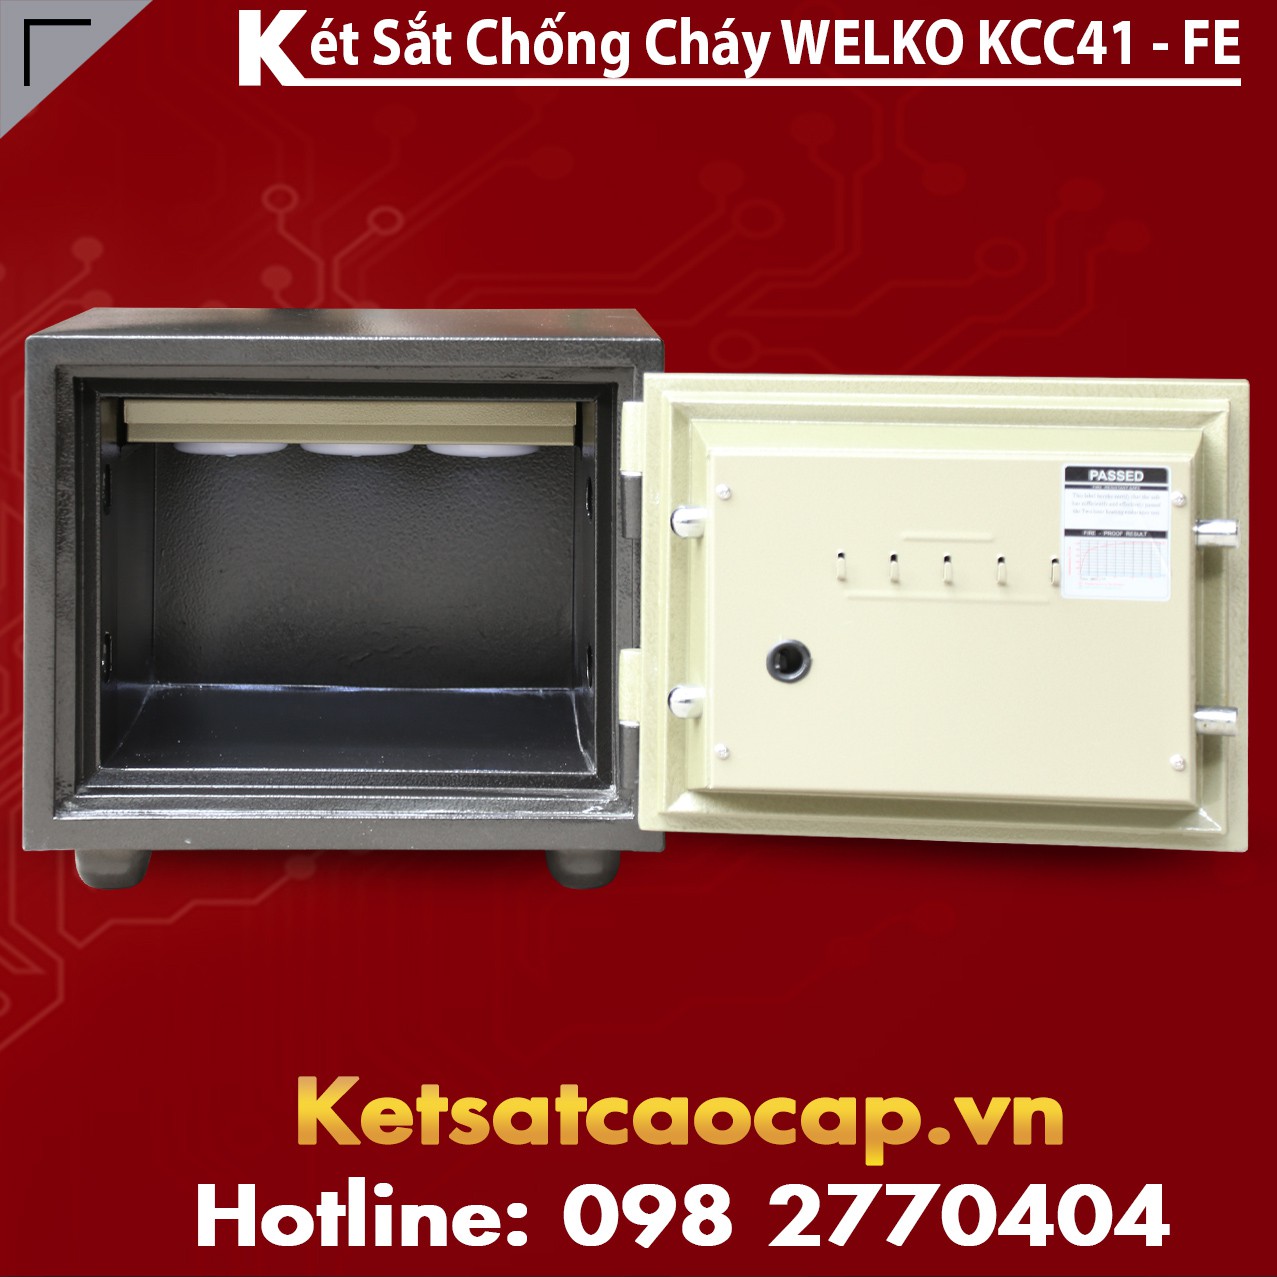 Digital Safe Box Wholesale Suppliers Nha May San Xuat Ket Sat Van Tay Cao Cap Chinh Hang So 1 VN